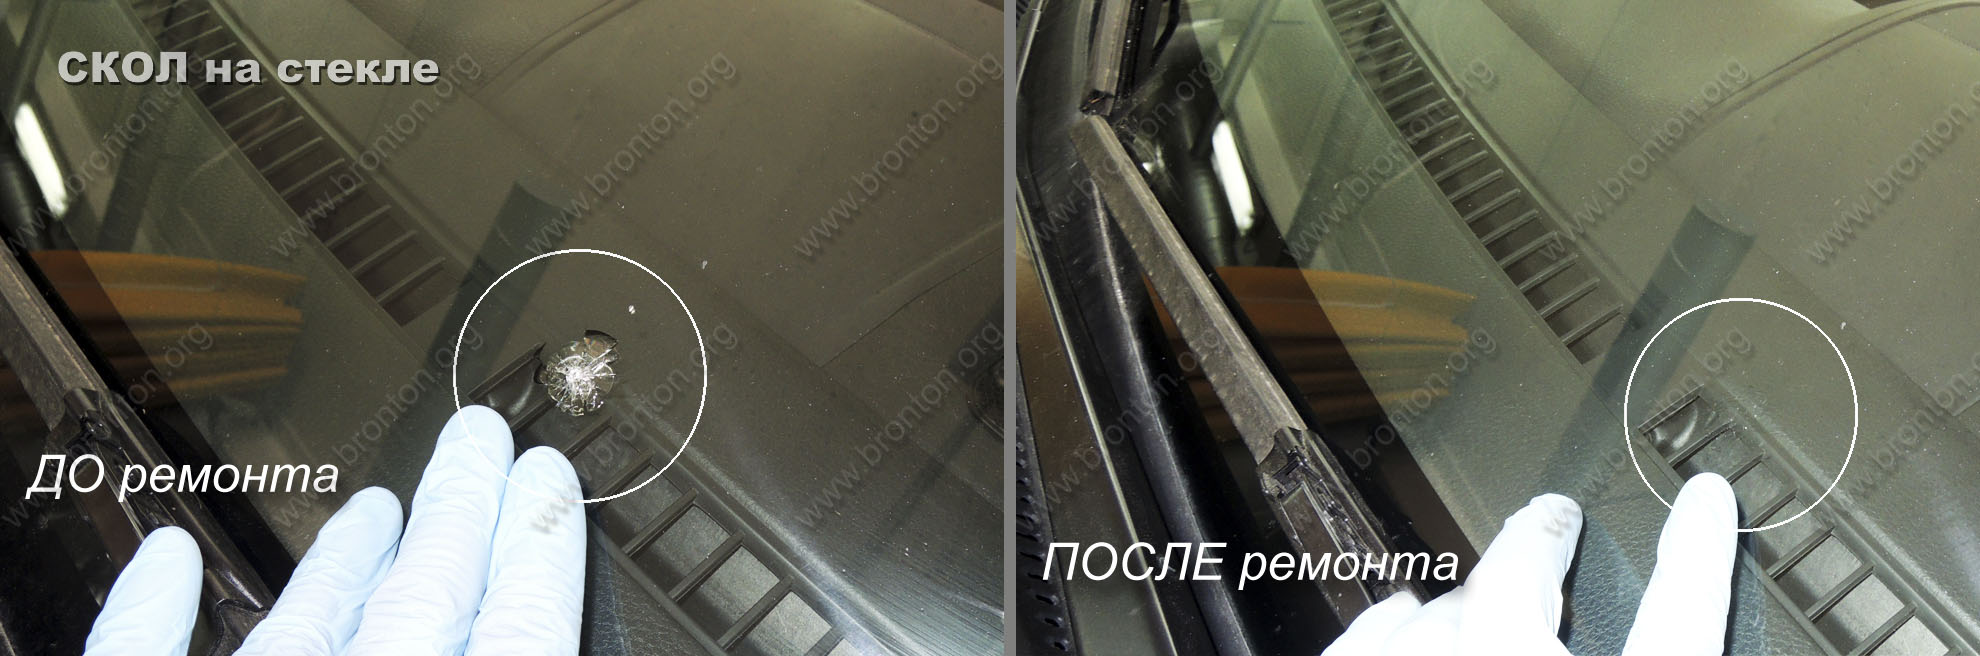 Ремонт автостекла в Москве : цена ремонта от 80 рублей/см